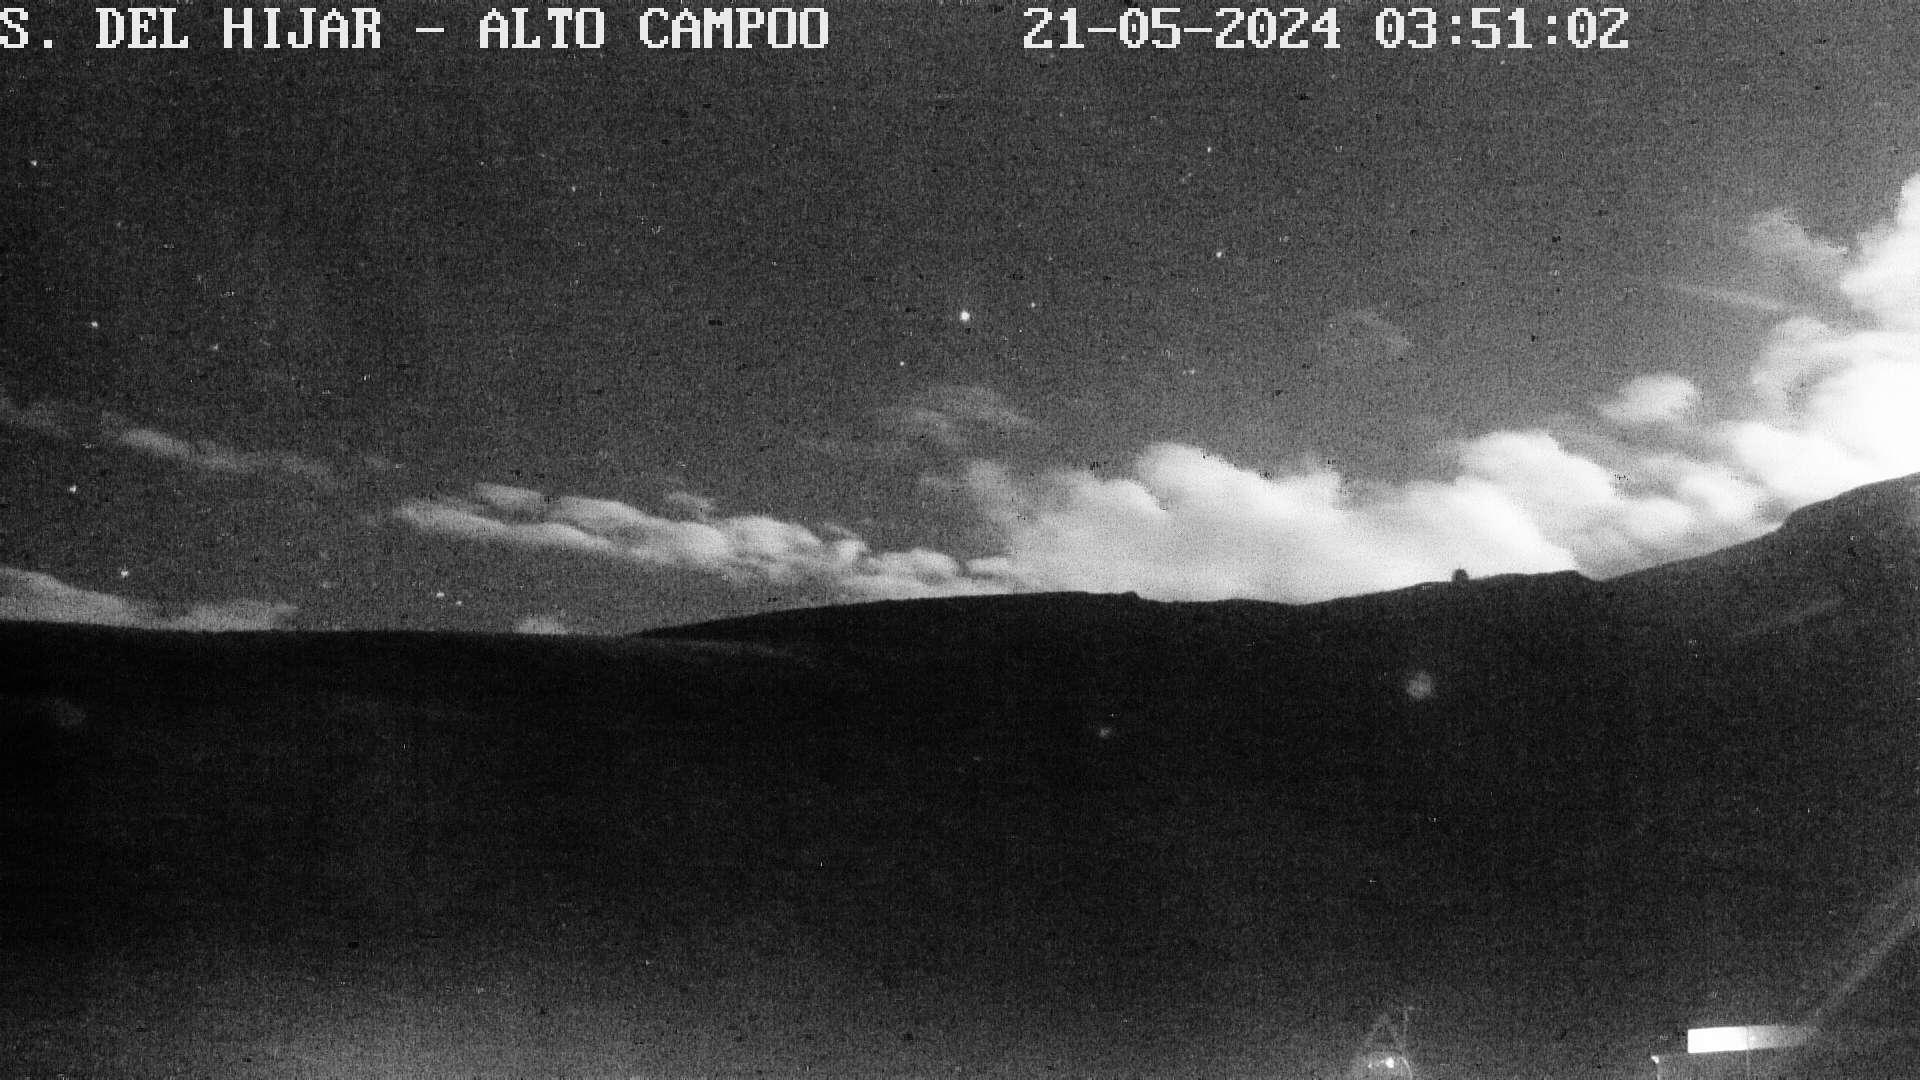 Webcam en Sierra del Hijar - El Castro